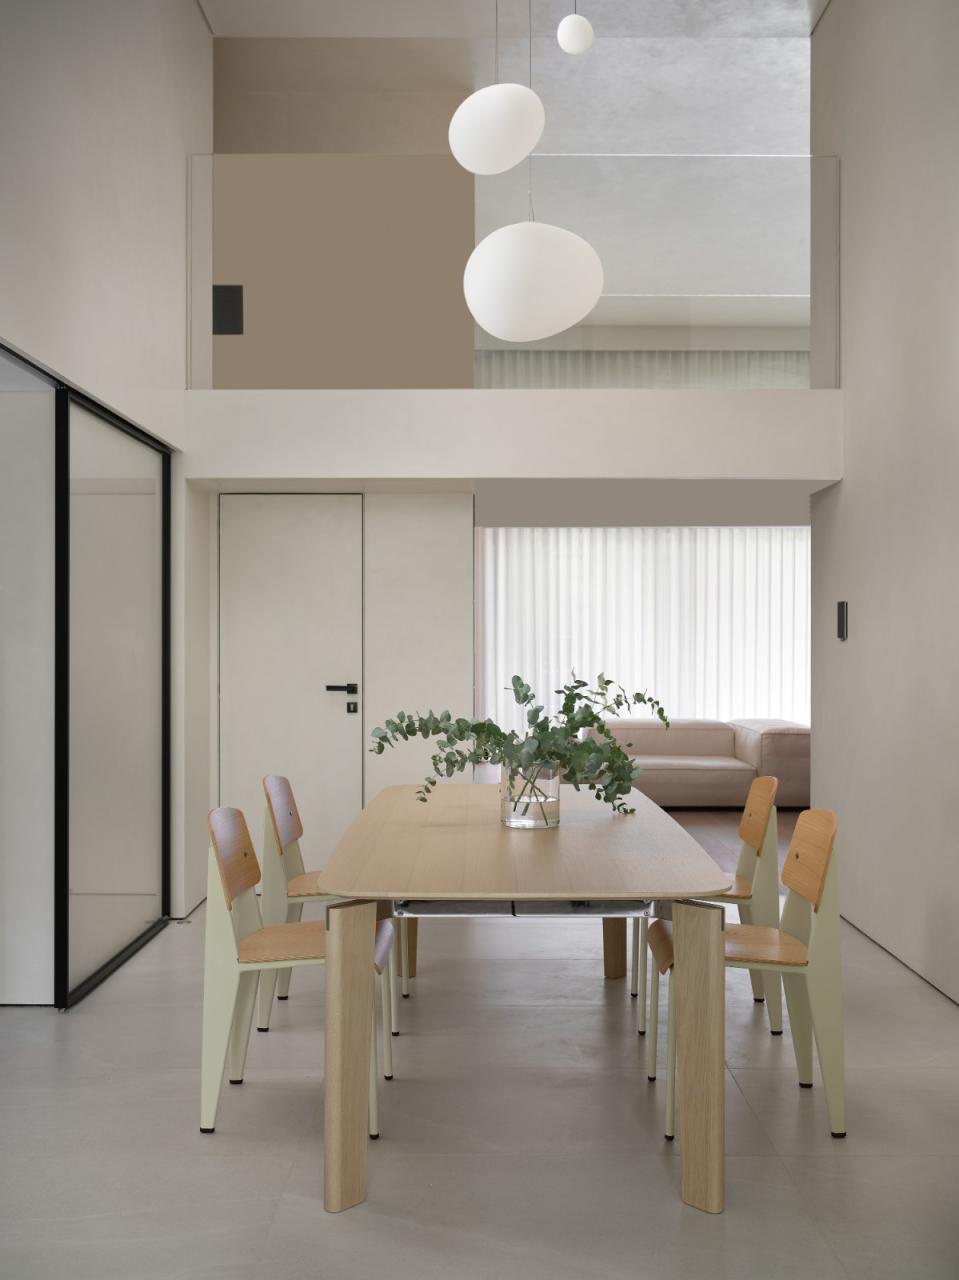 梧桐树下的420平米复式公寓: 为年轻家庭巧妙创建”视线连通”挑高空间